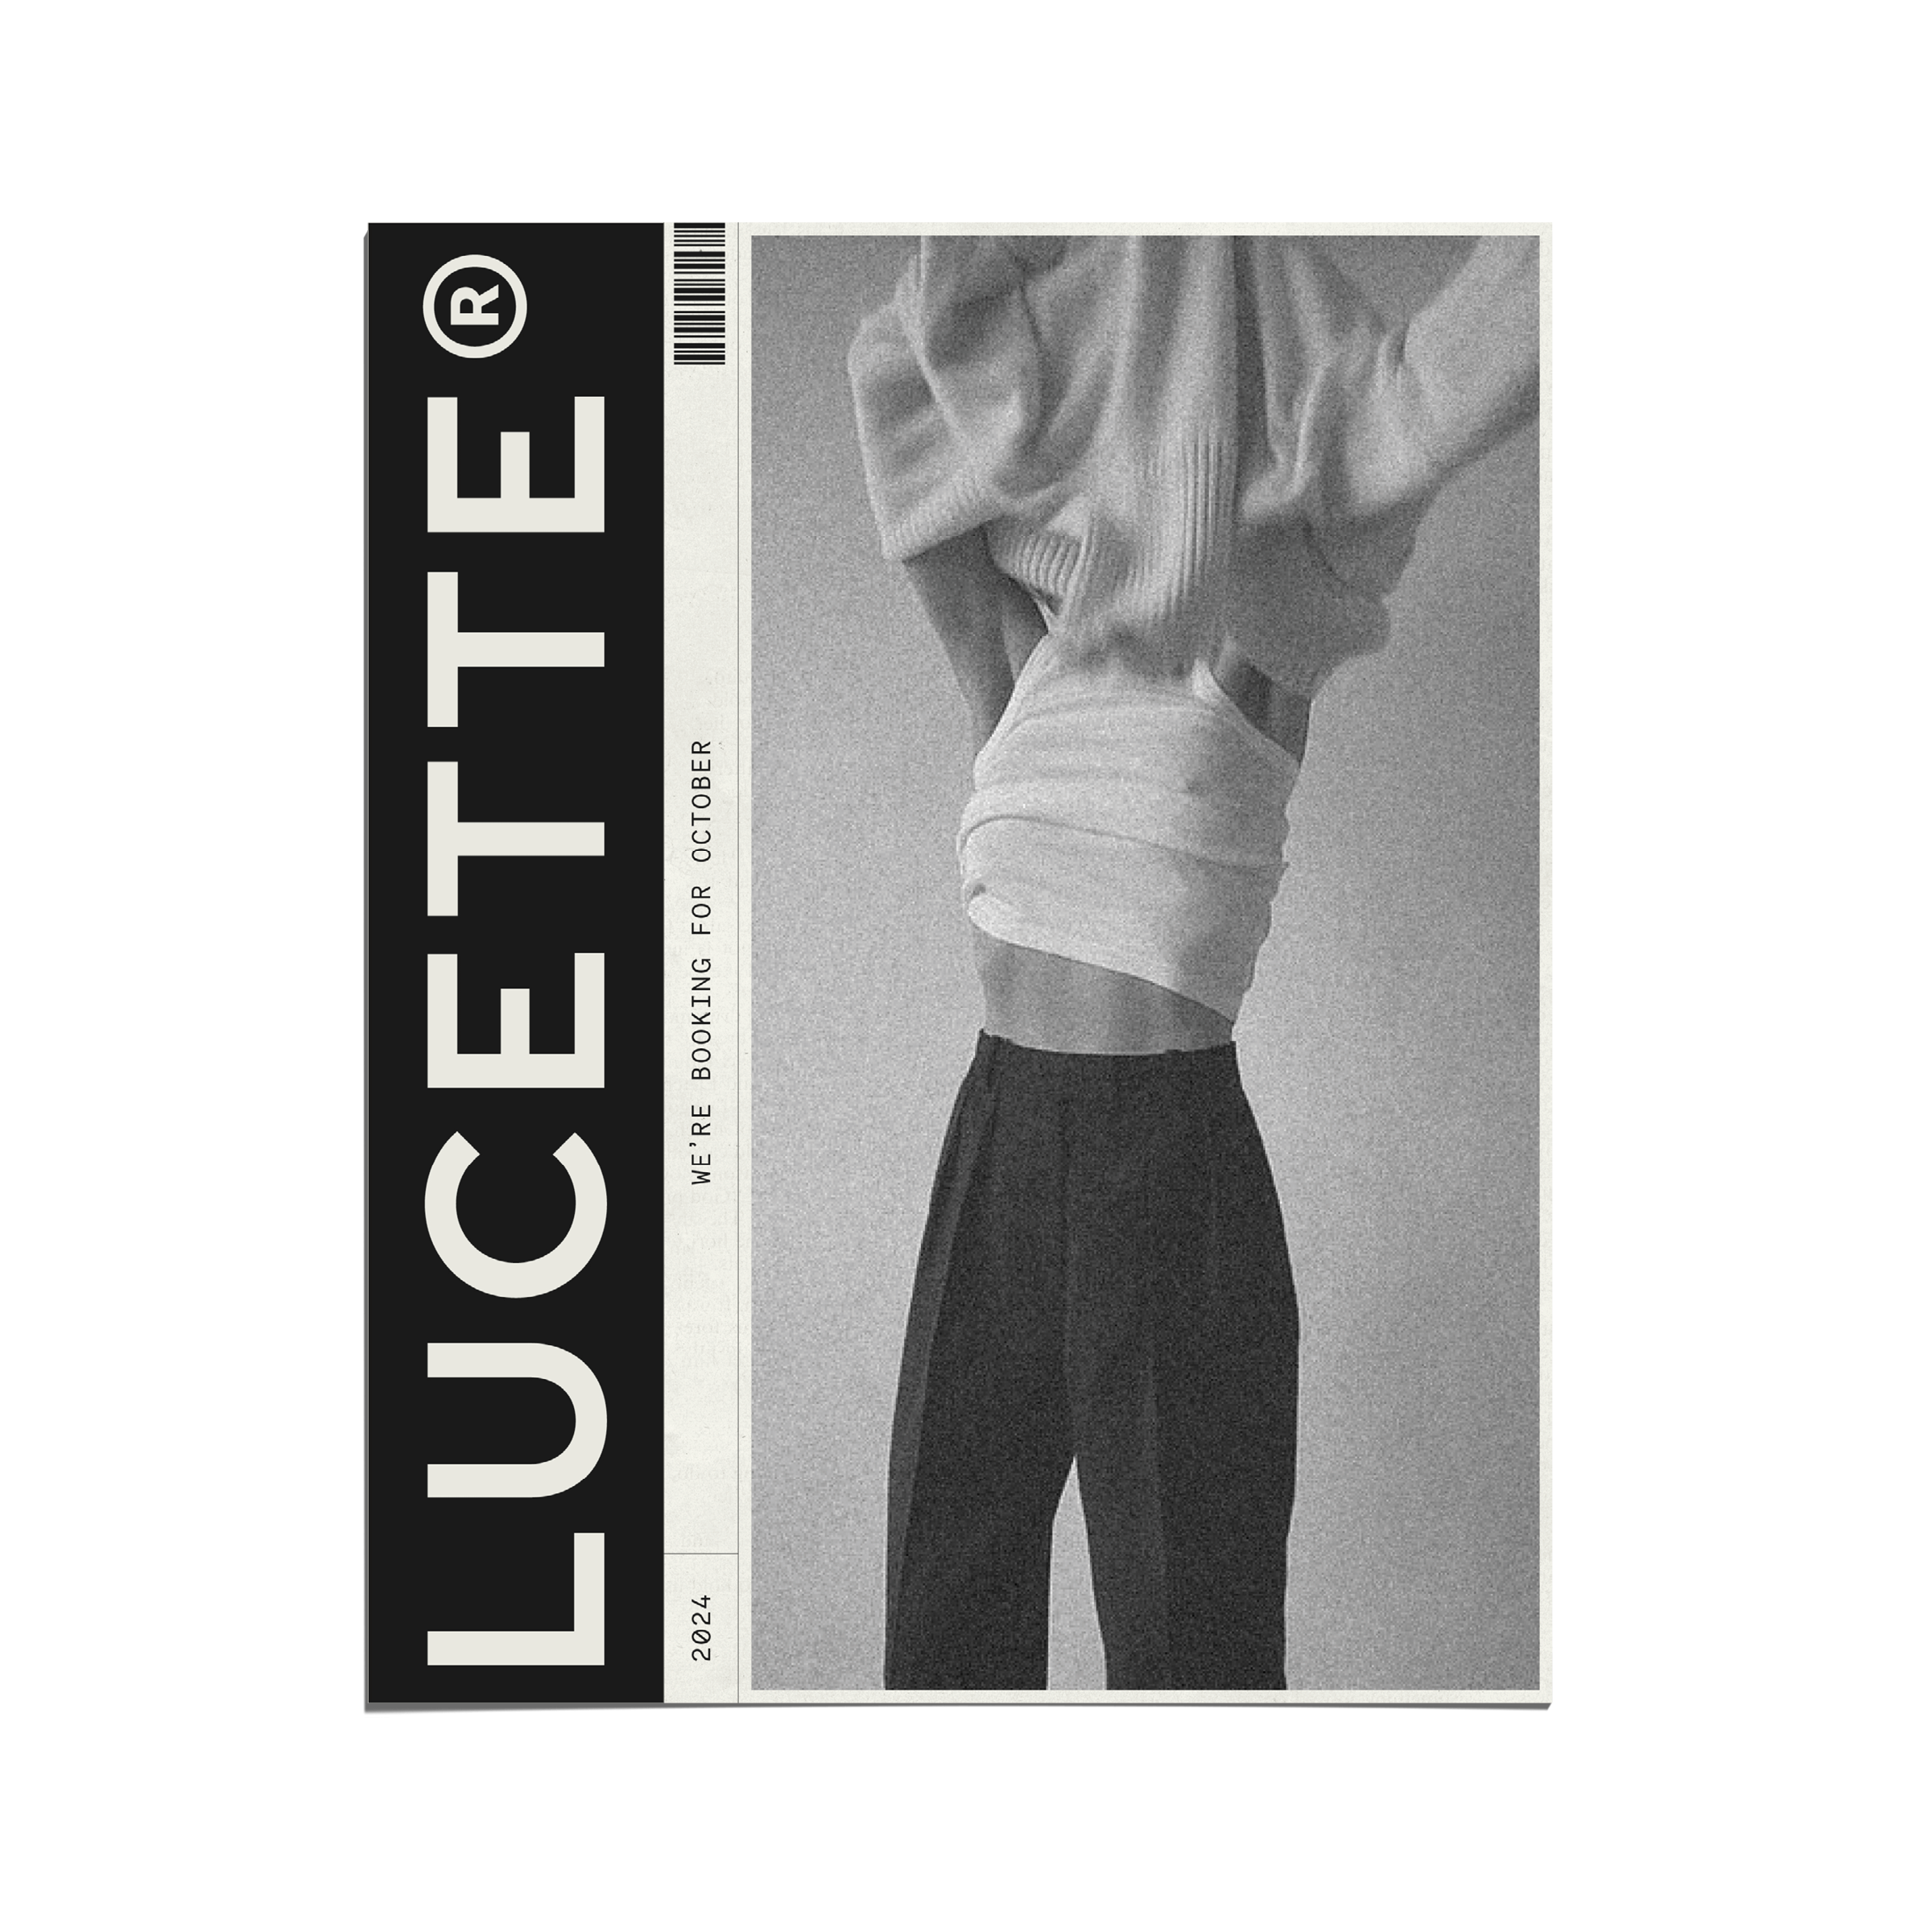 Lucette Social Media Kit